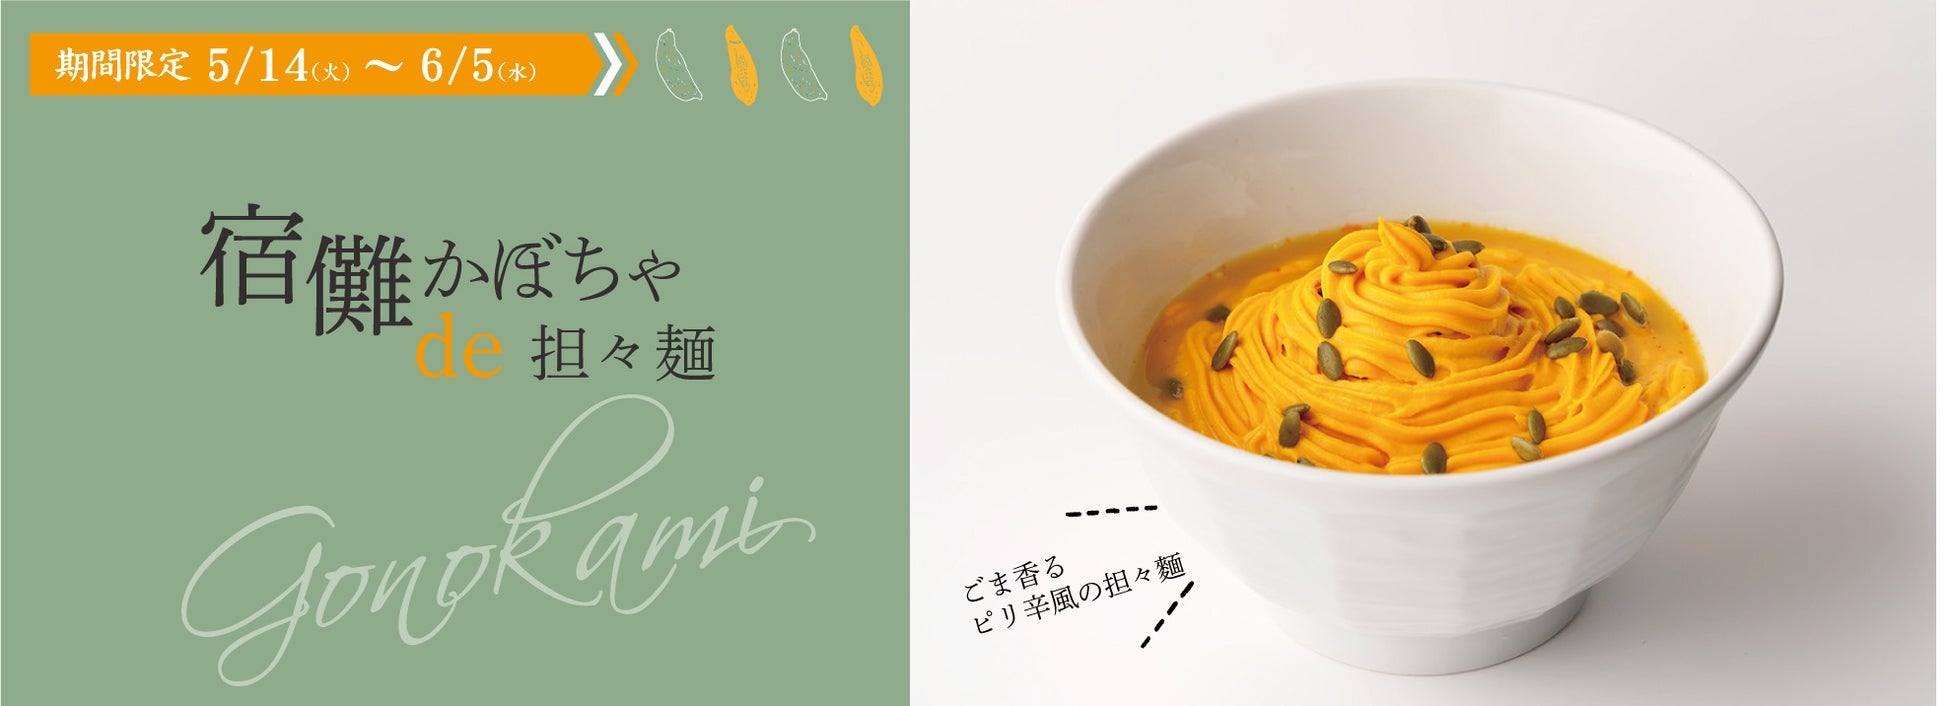 宿儺(すくな)かぼちゃ de 担々麺販売開始